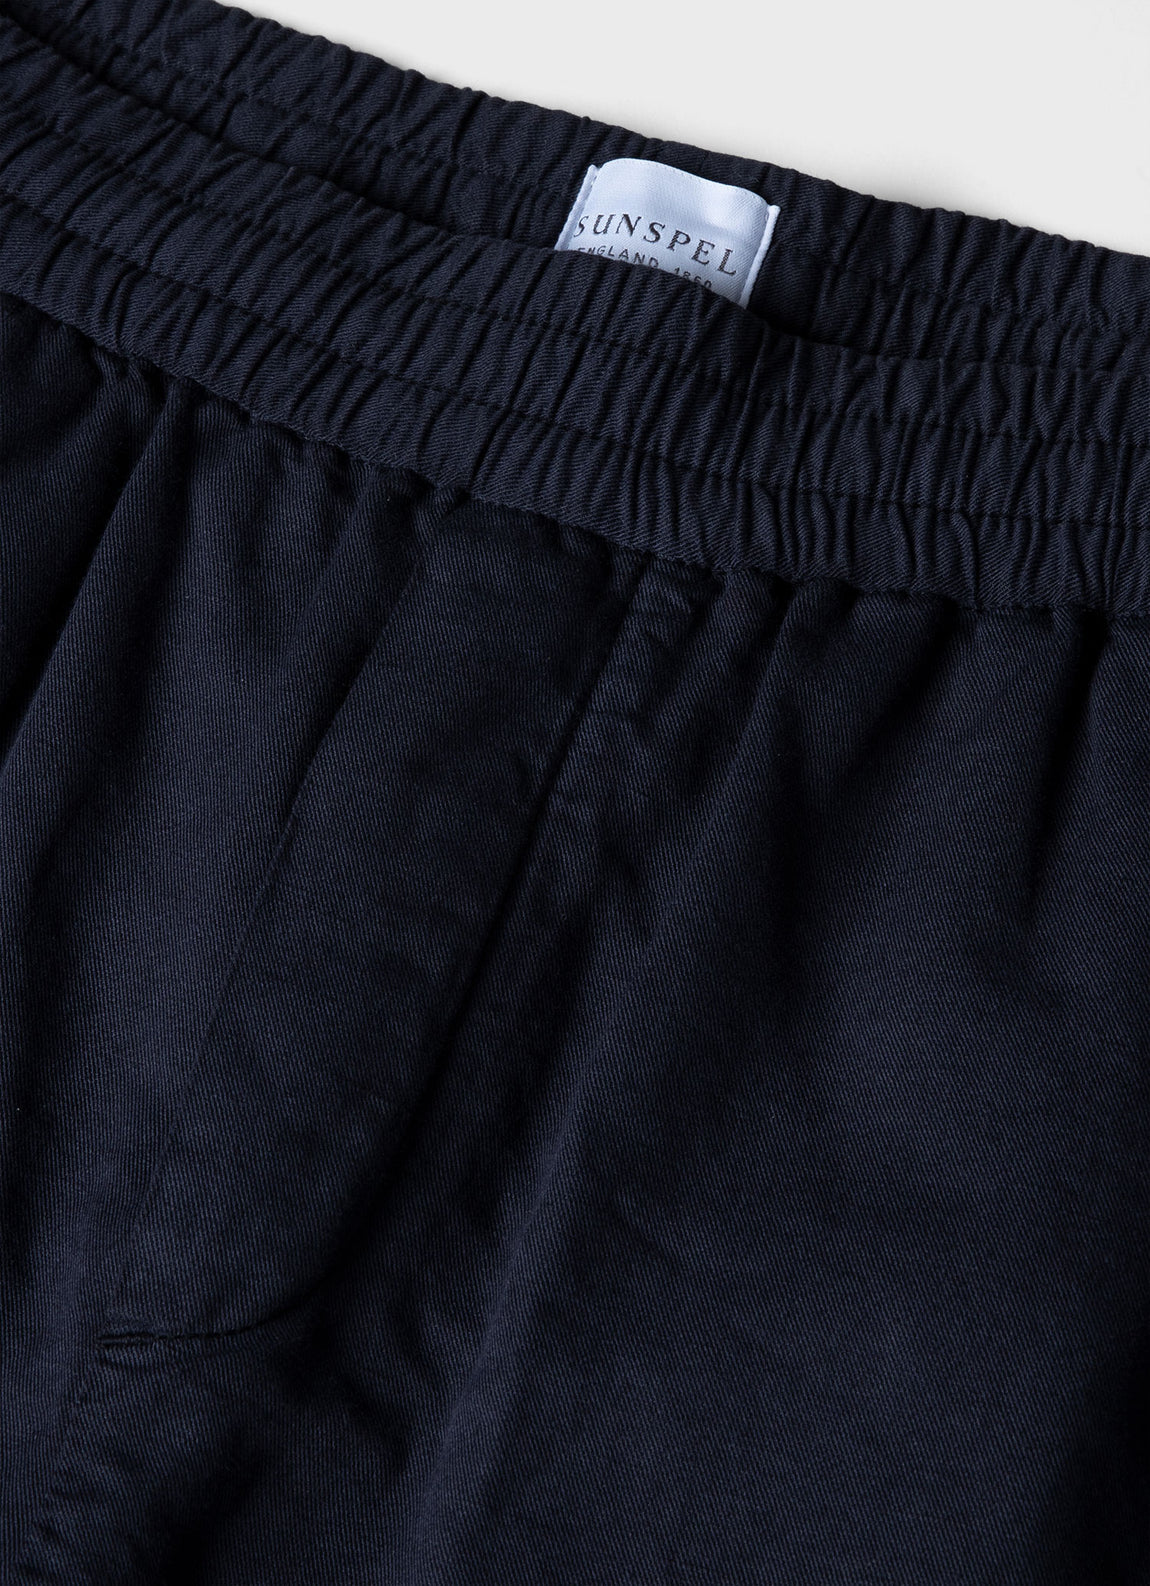 Men's Cotton Linen Drawstring Shorts in Navy